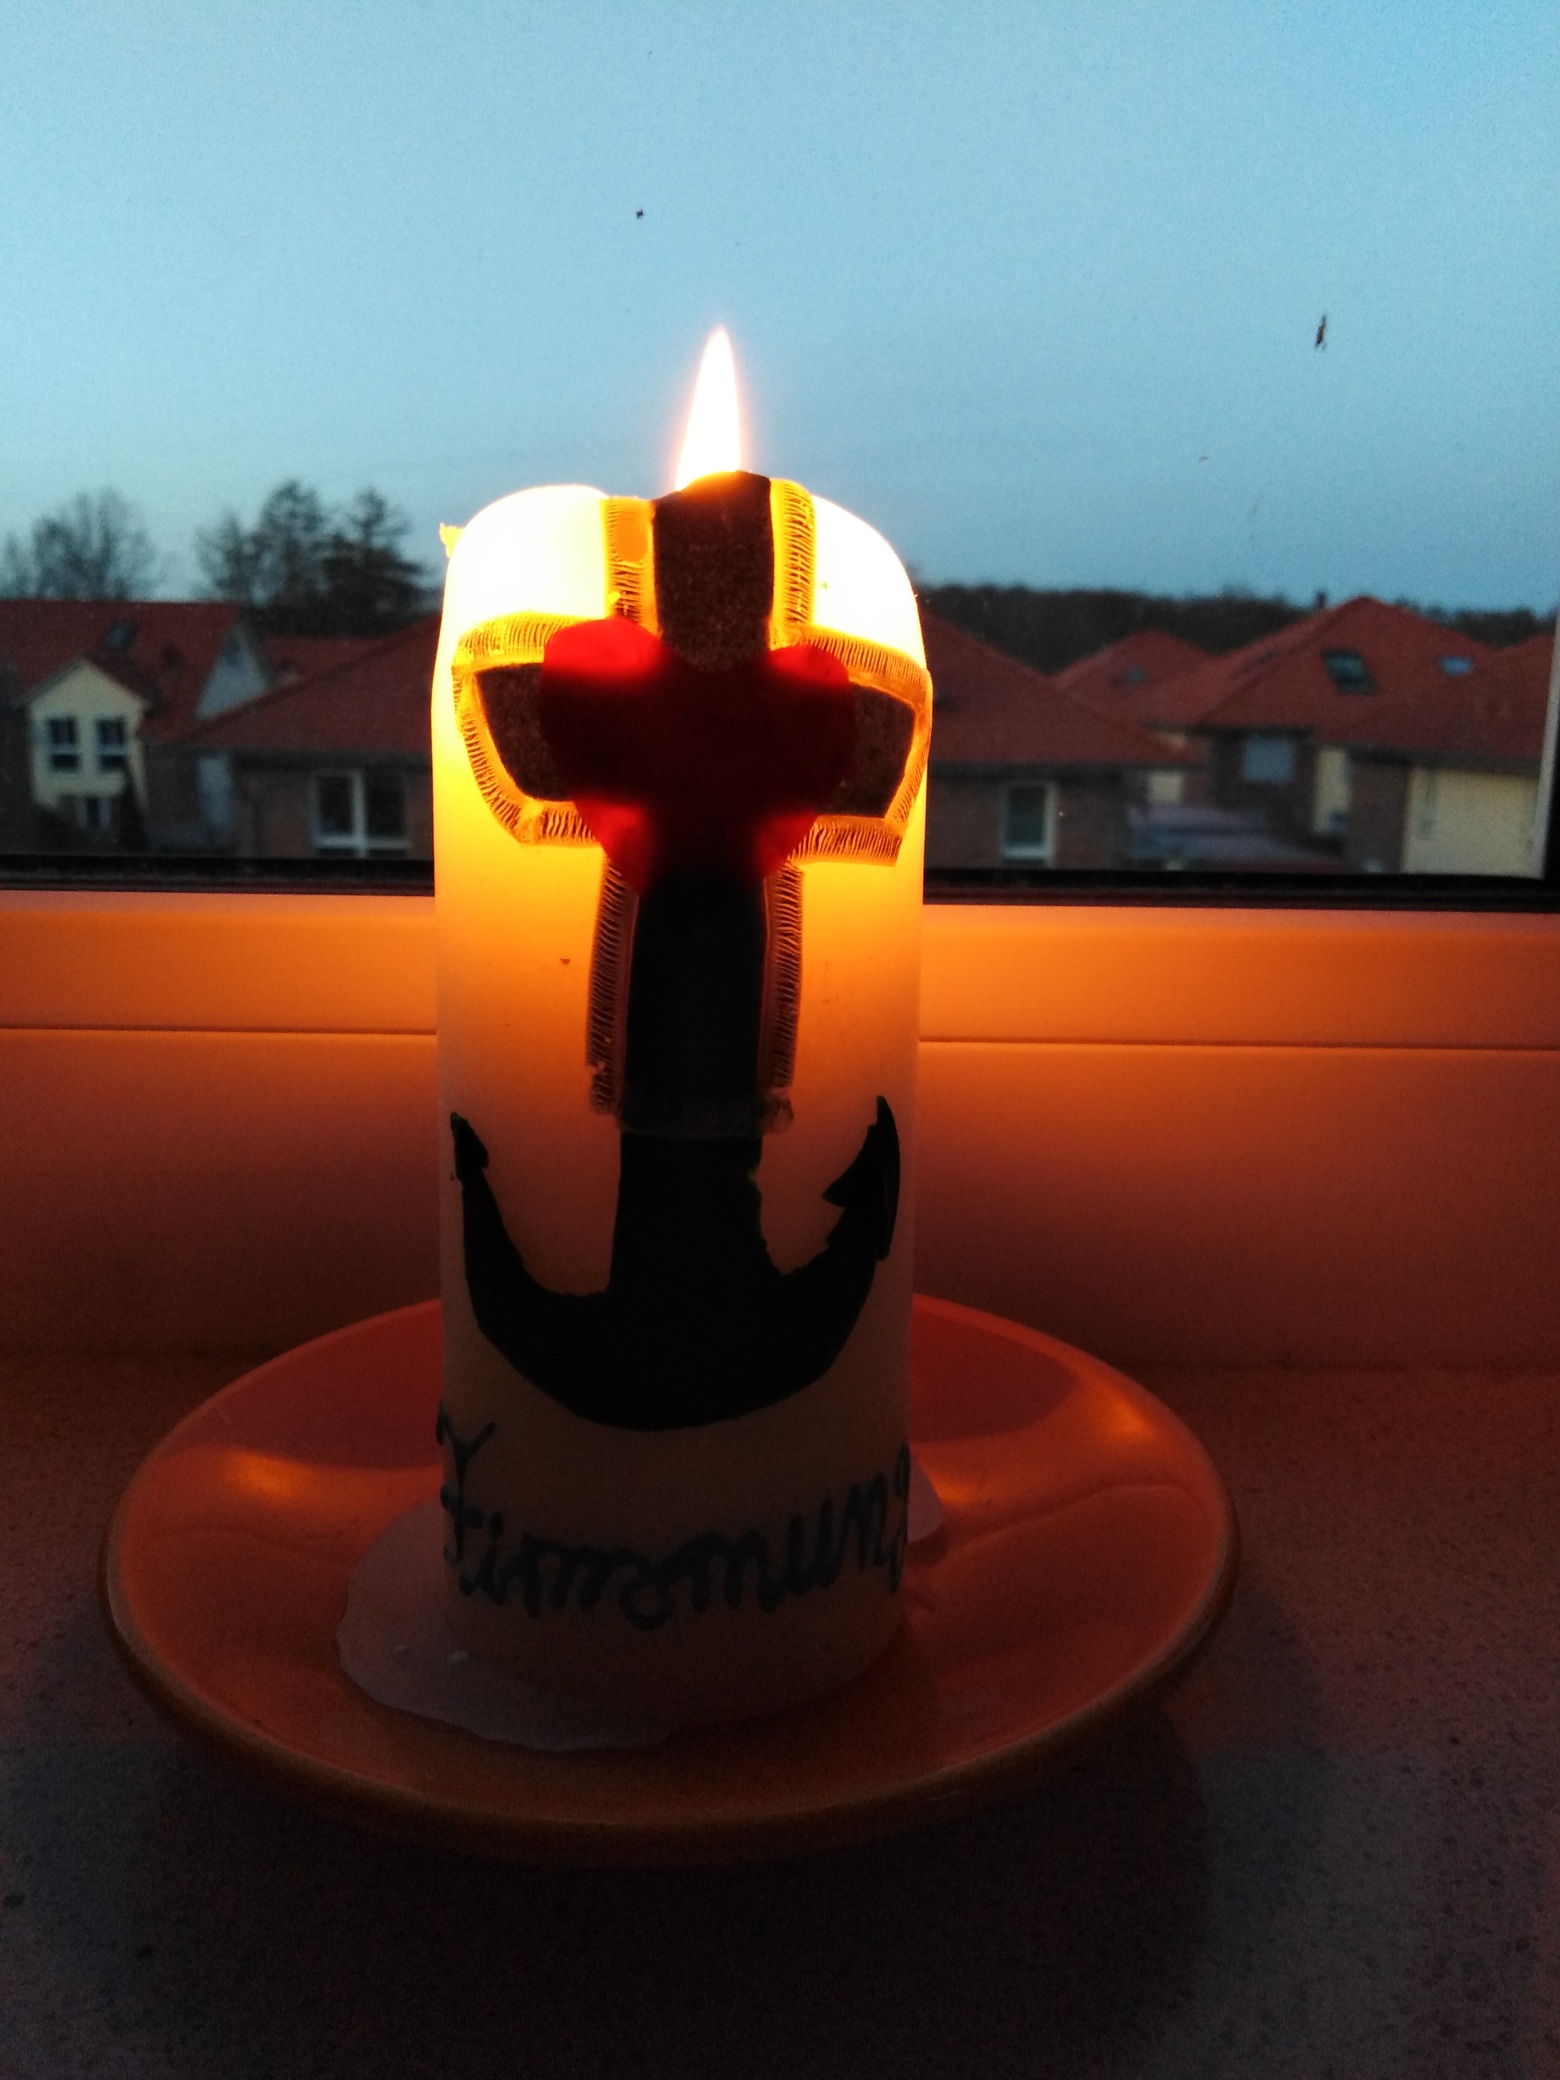 Firmkurs "Firmung medial" - diese Kerze wurde beim Vorstellen der Firmbewerber im Gottesdienst im Dezember überreicht